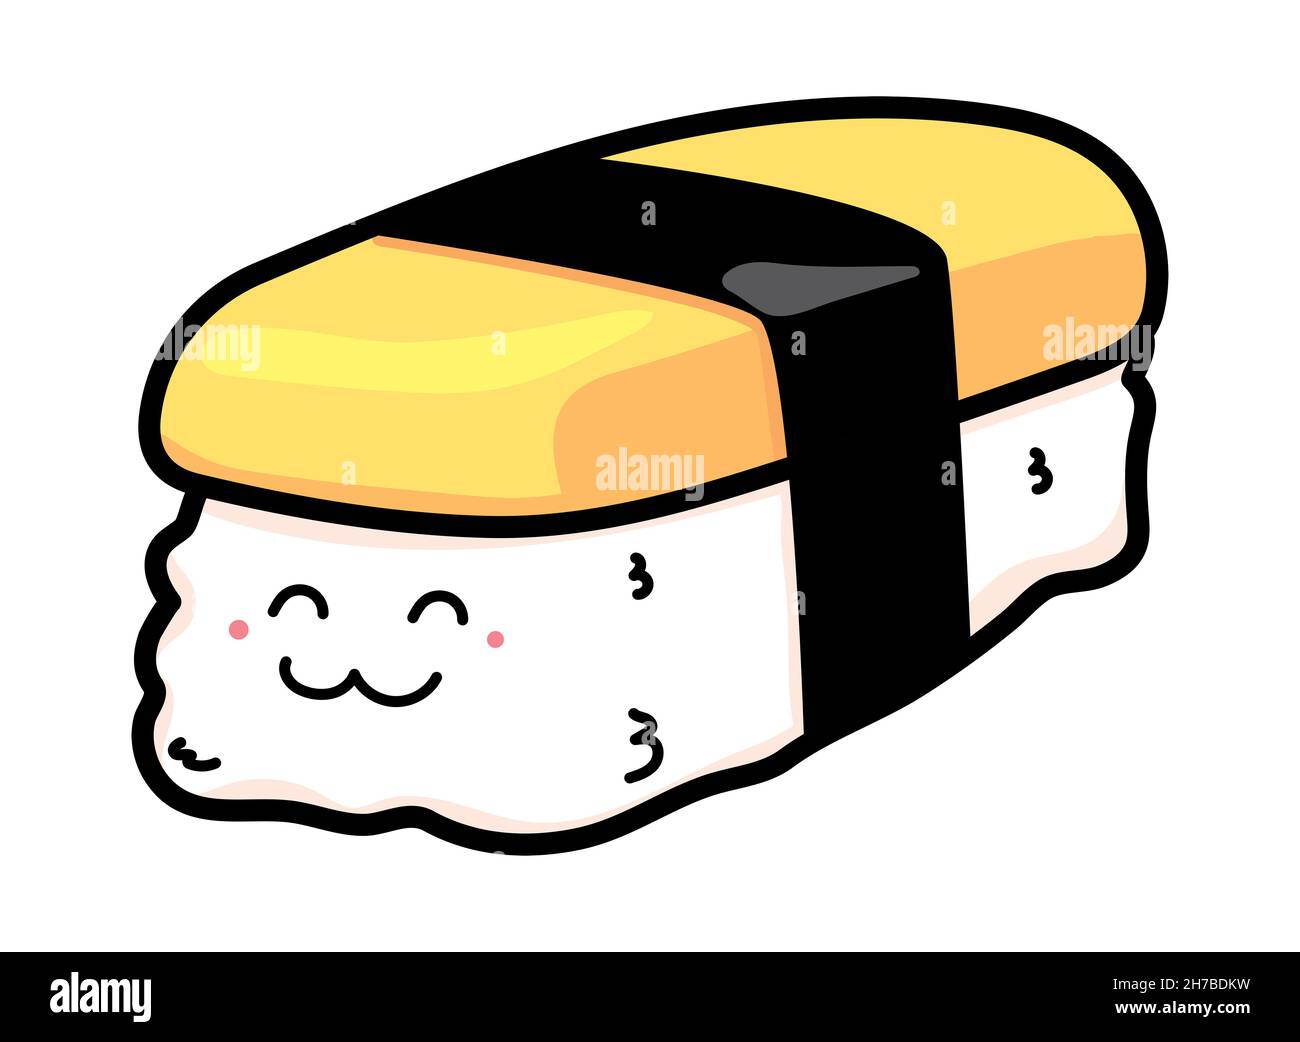 Mignon dessin animé Tamako oeuf sushi, le personnage coupé Tamako ou doux oeuf sushi, isolé sur fond blanc Banque D'Images